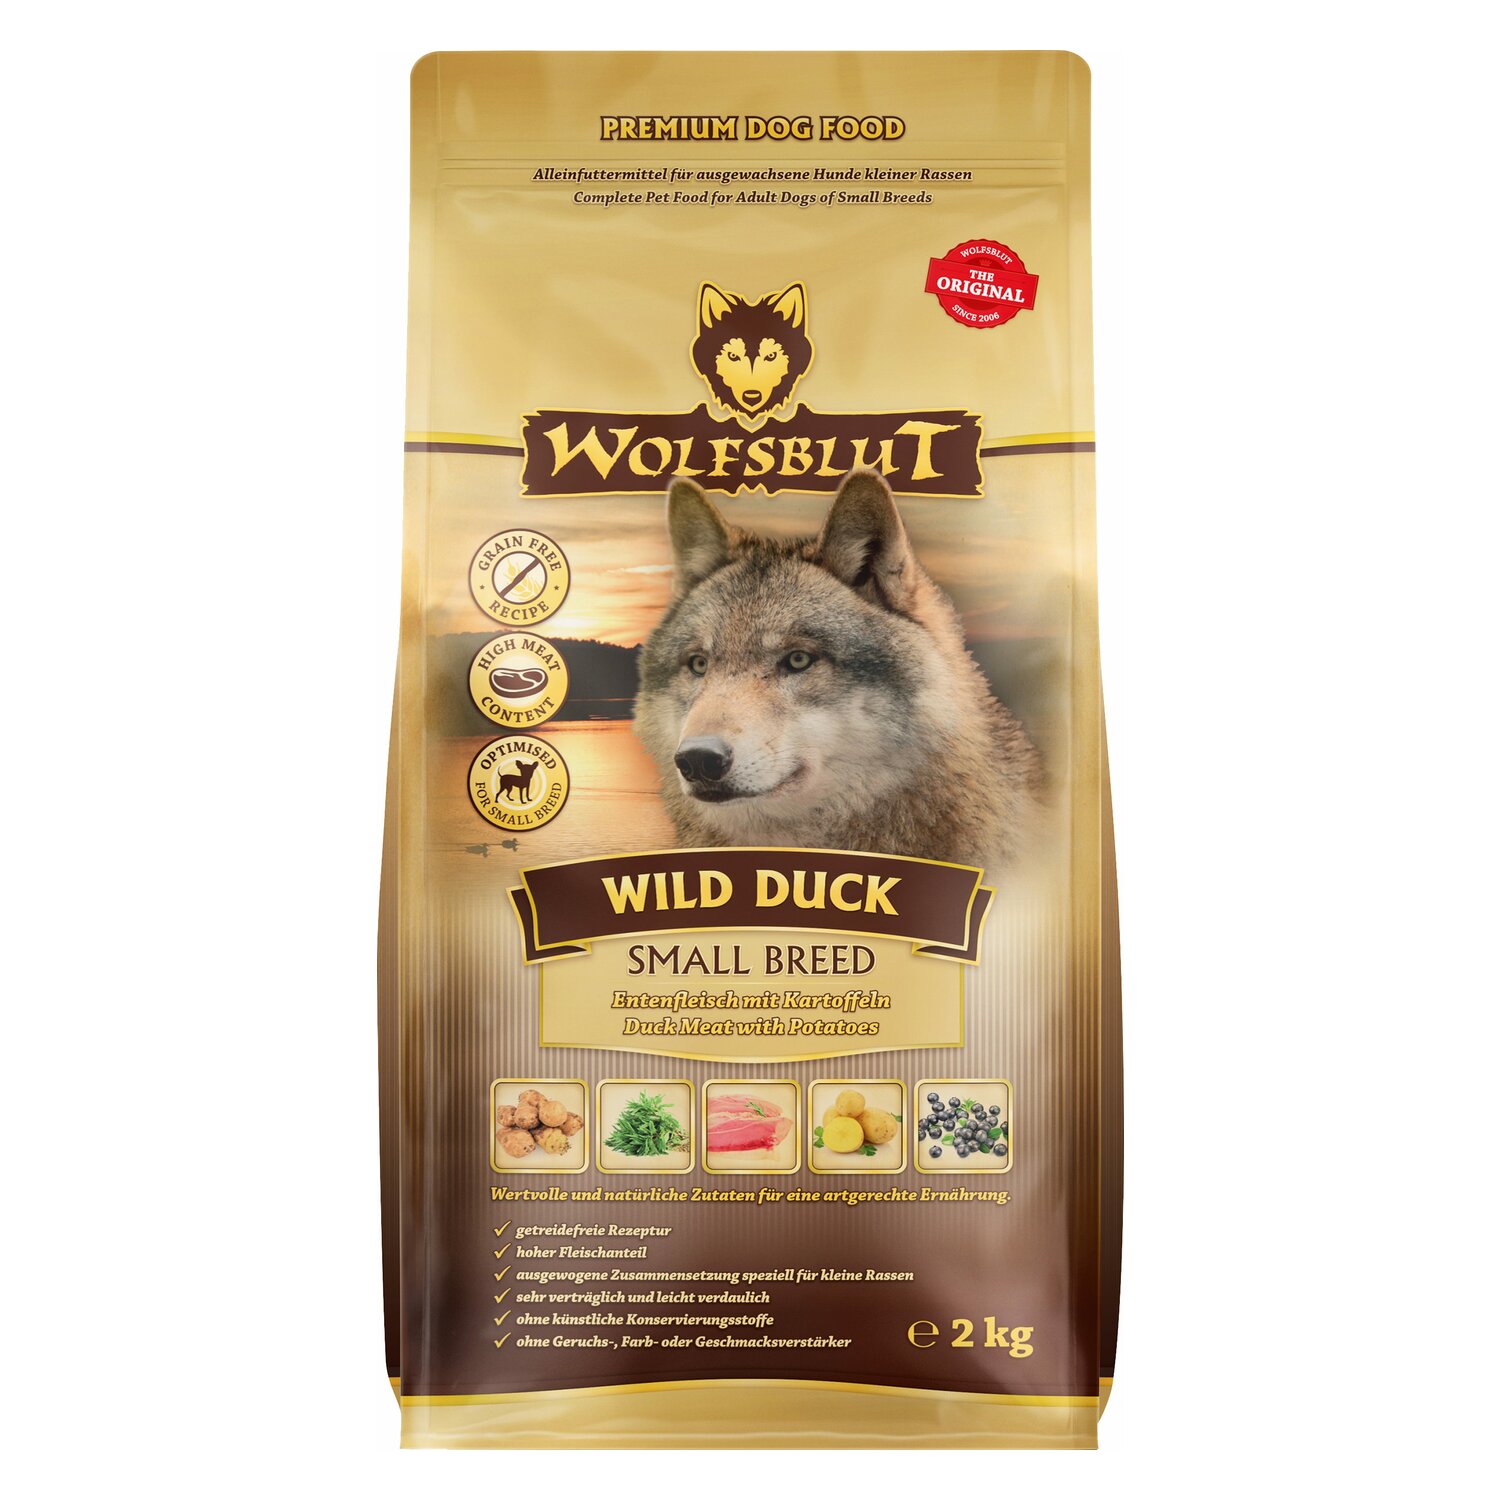 WOLFSBLUT Trockenfutter Small Breed Wild Duck 2kg | Ente